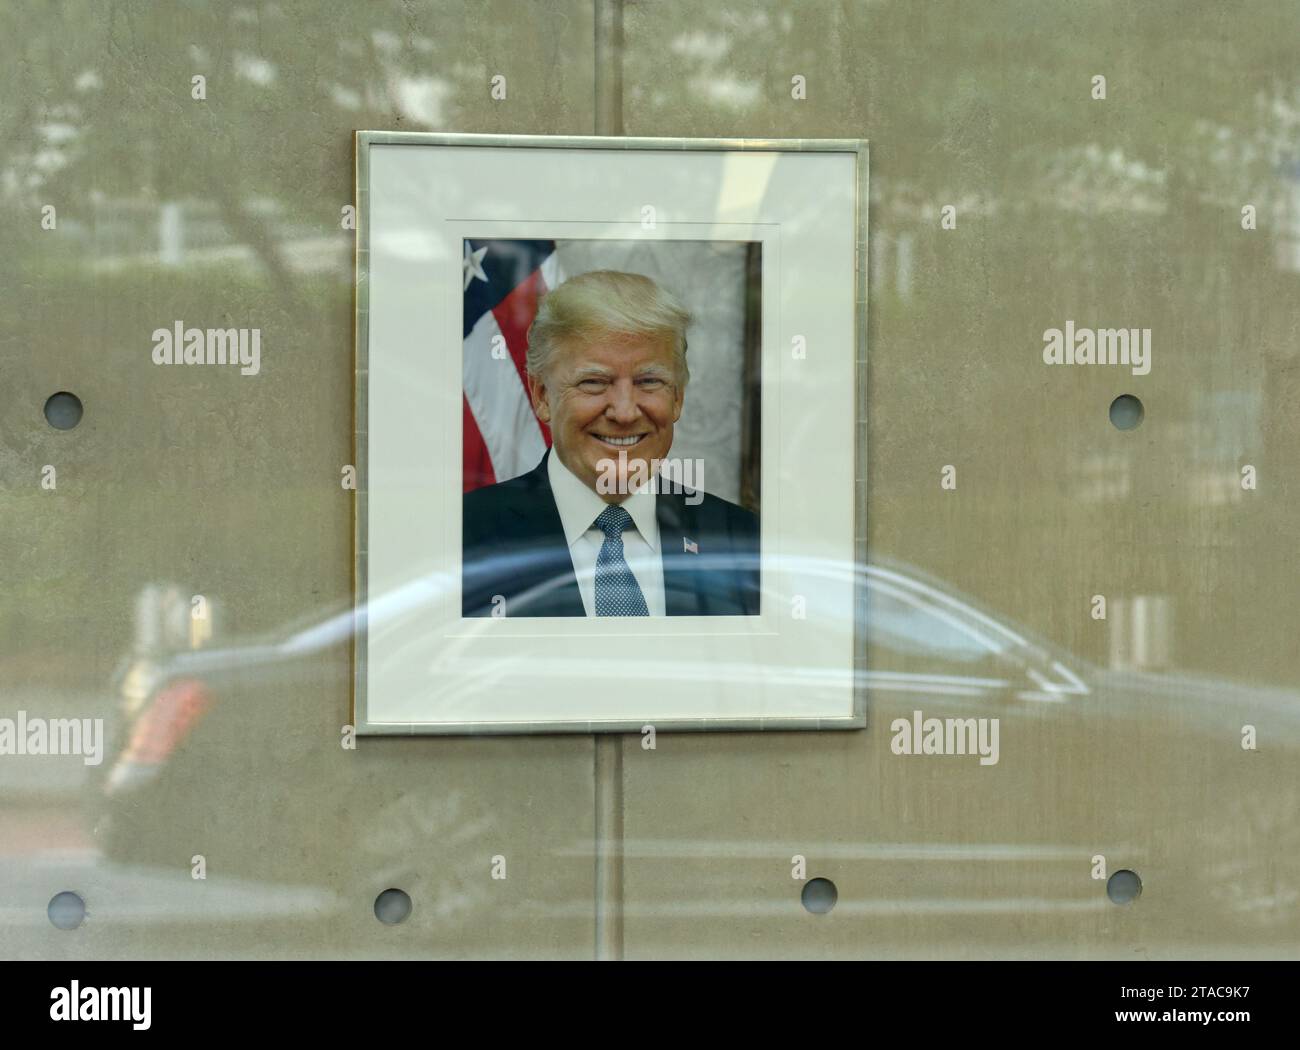 New York, USA - 26. Mai 2018: Porträt von Donald Trump in der US-Mission bei den Vereinten Nationen in New York. Stockfoto